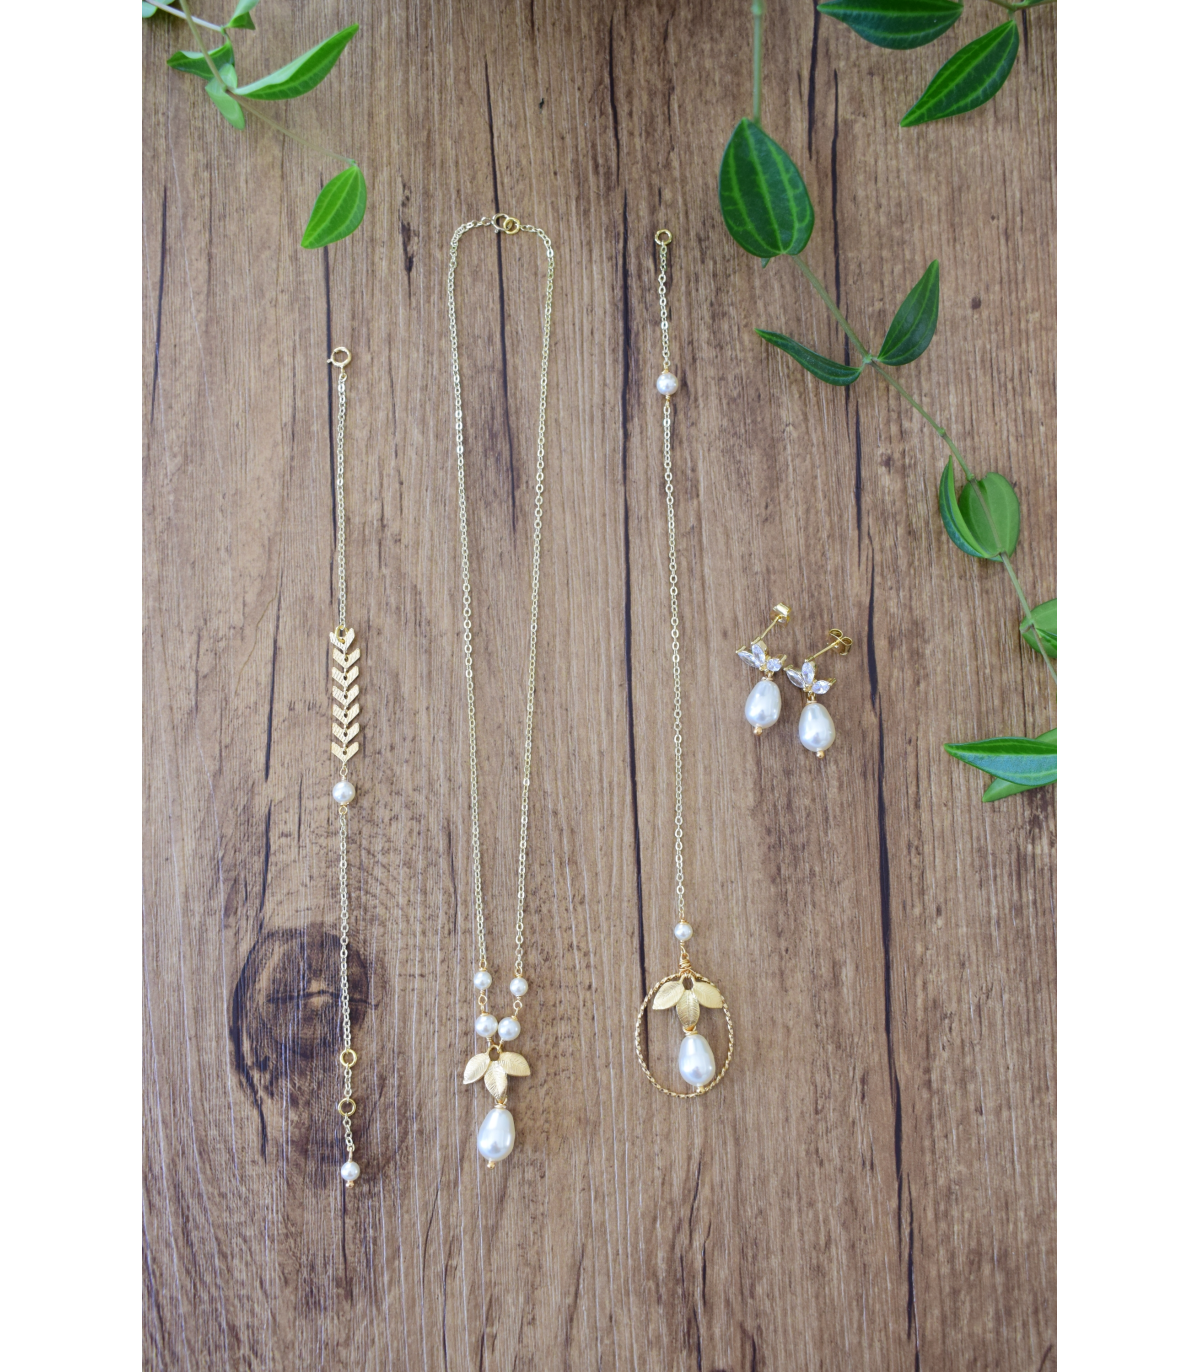 Collier de dos pour mariage boheme, feuilles dorées et cercle avec des perles nacrées. Lola framboise bijoux mariage.